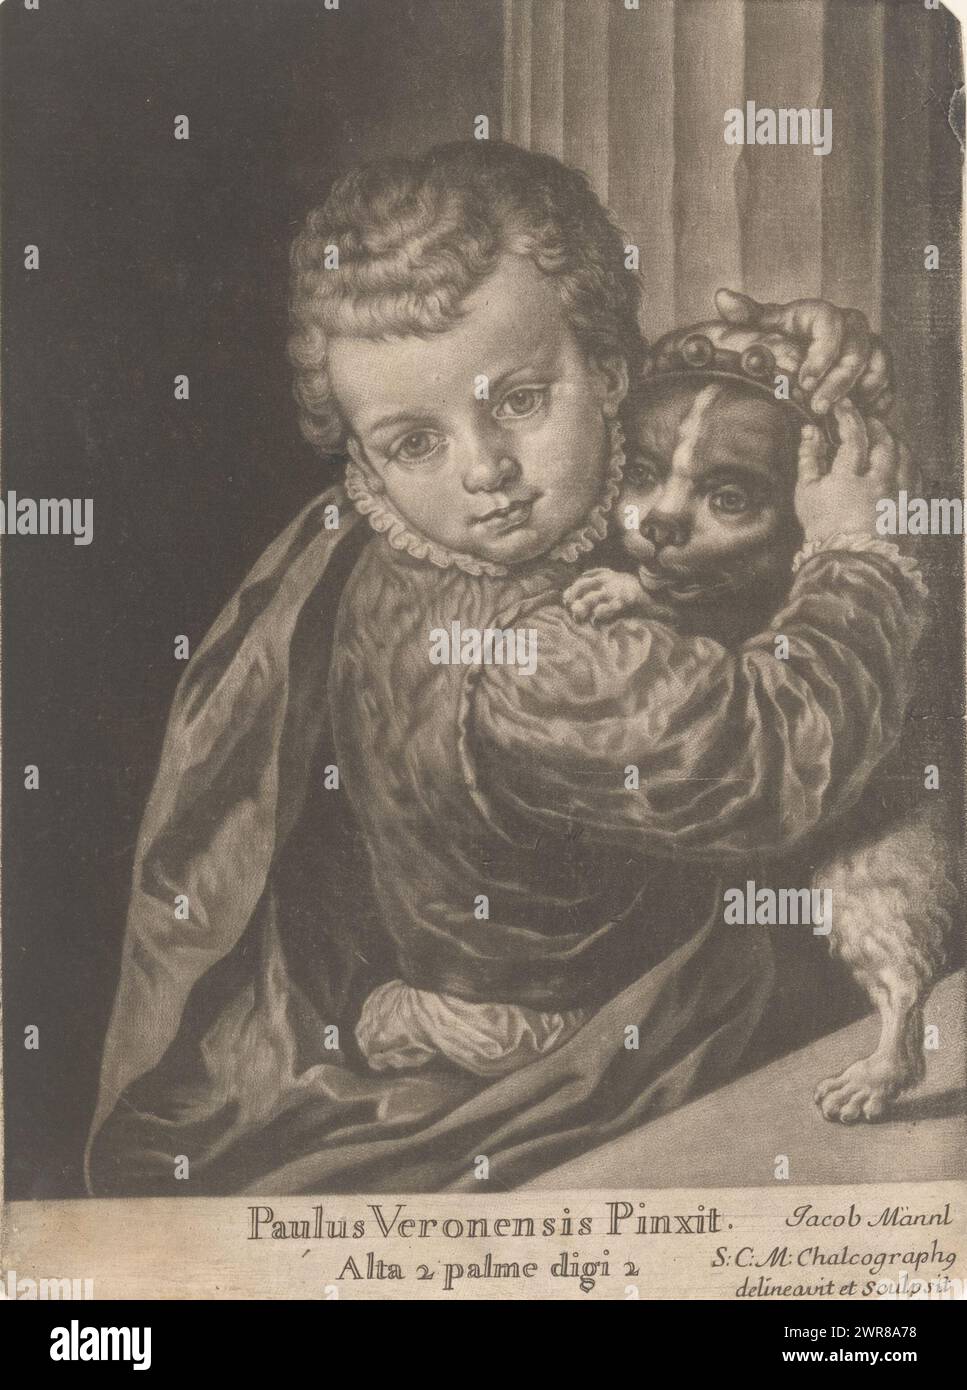 Garçon avec chien, peintures de la Galerie Impériale de Vienne (titre de la série), imprimeur : Jakob Männl, d'après la peinture de : Paolo Veronese, 1663 - 1712, papier, hauteur 234 mm × largeur 170 mm, impression Banque D'Images